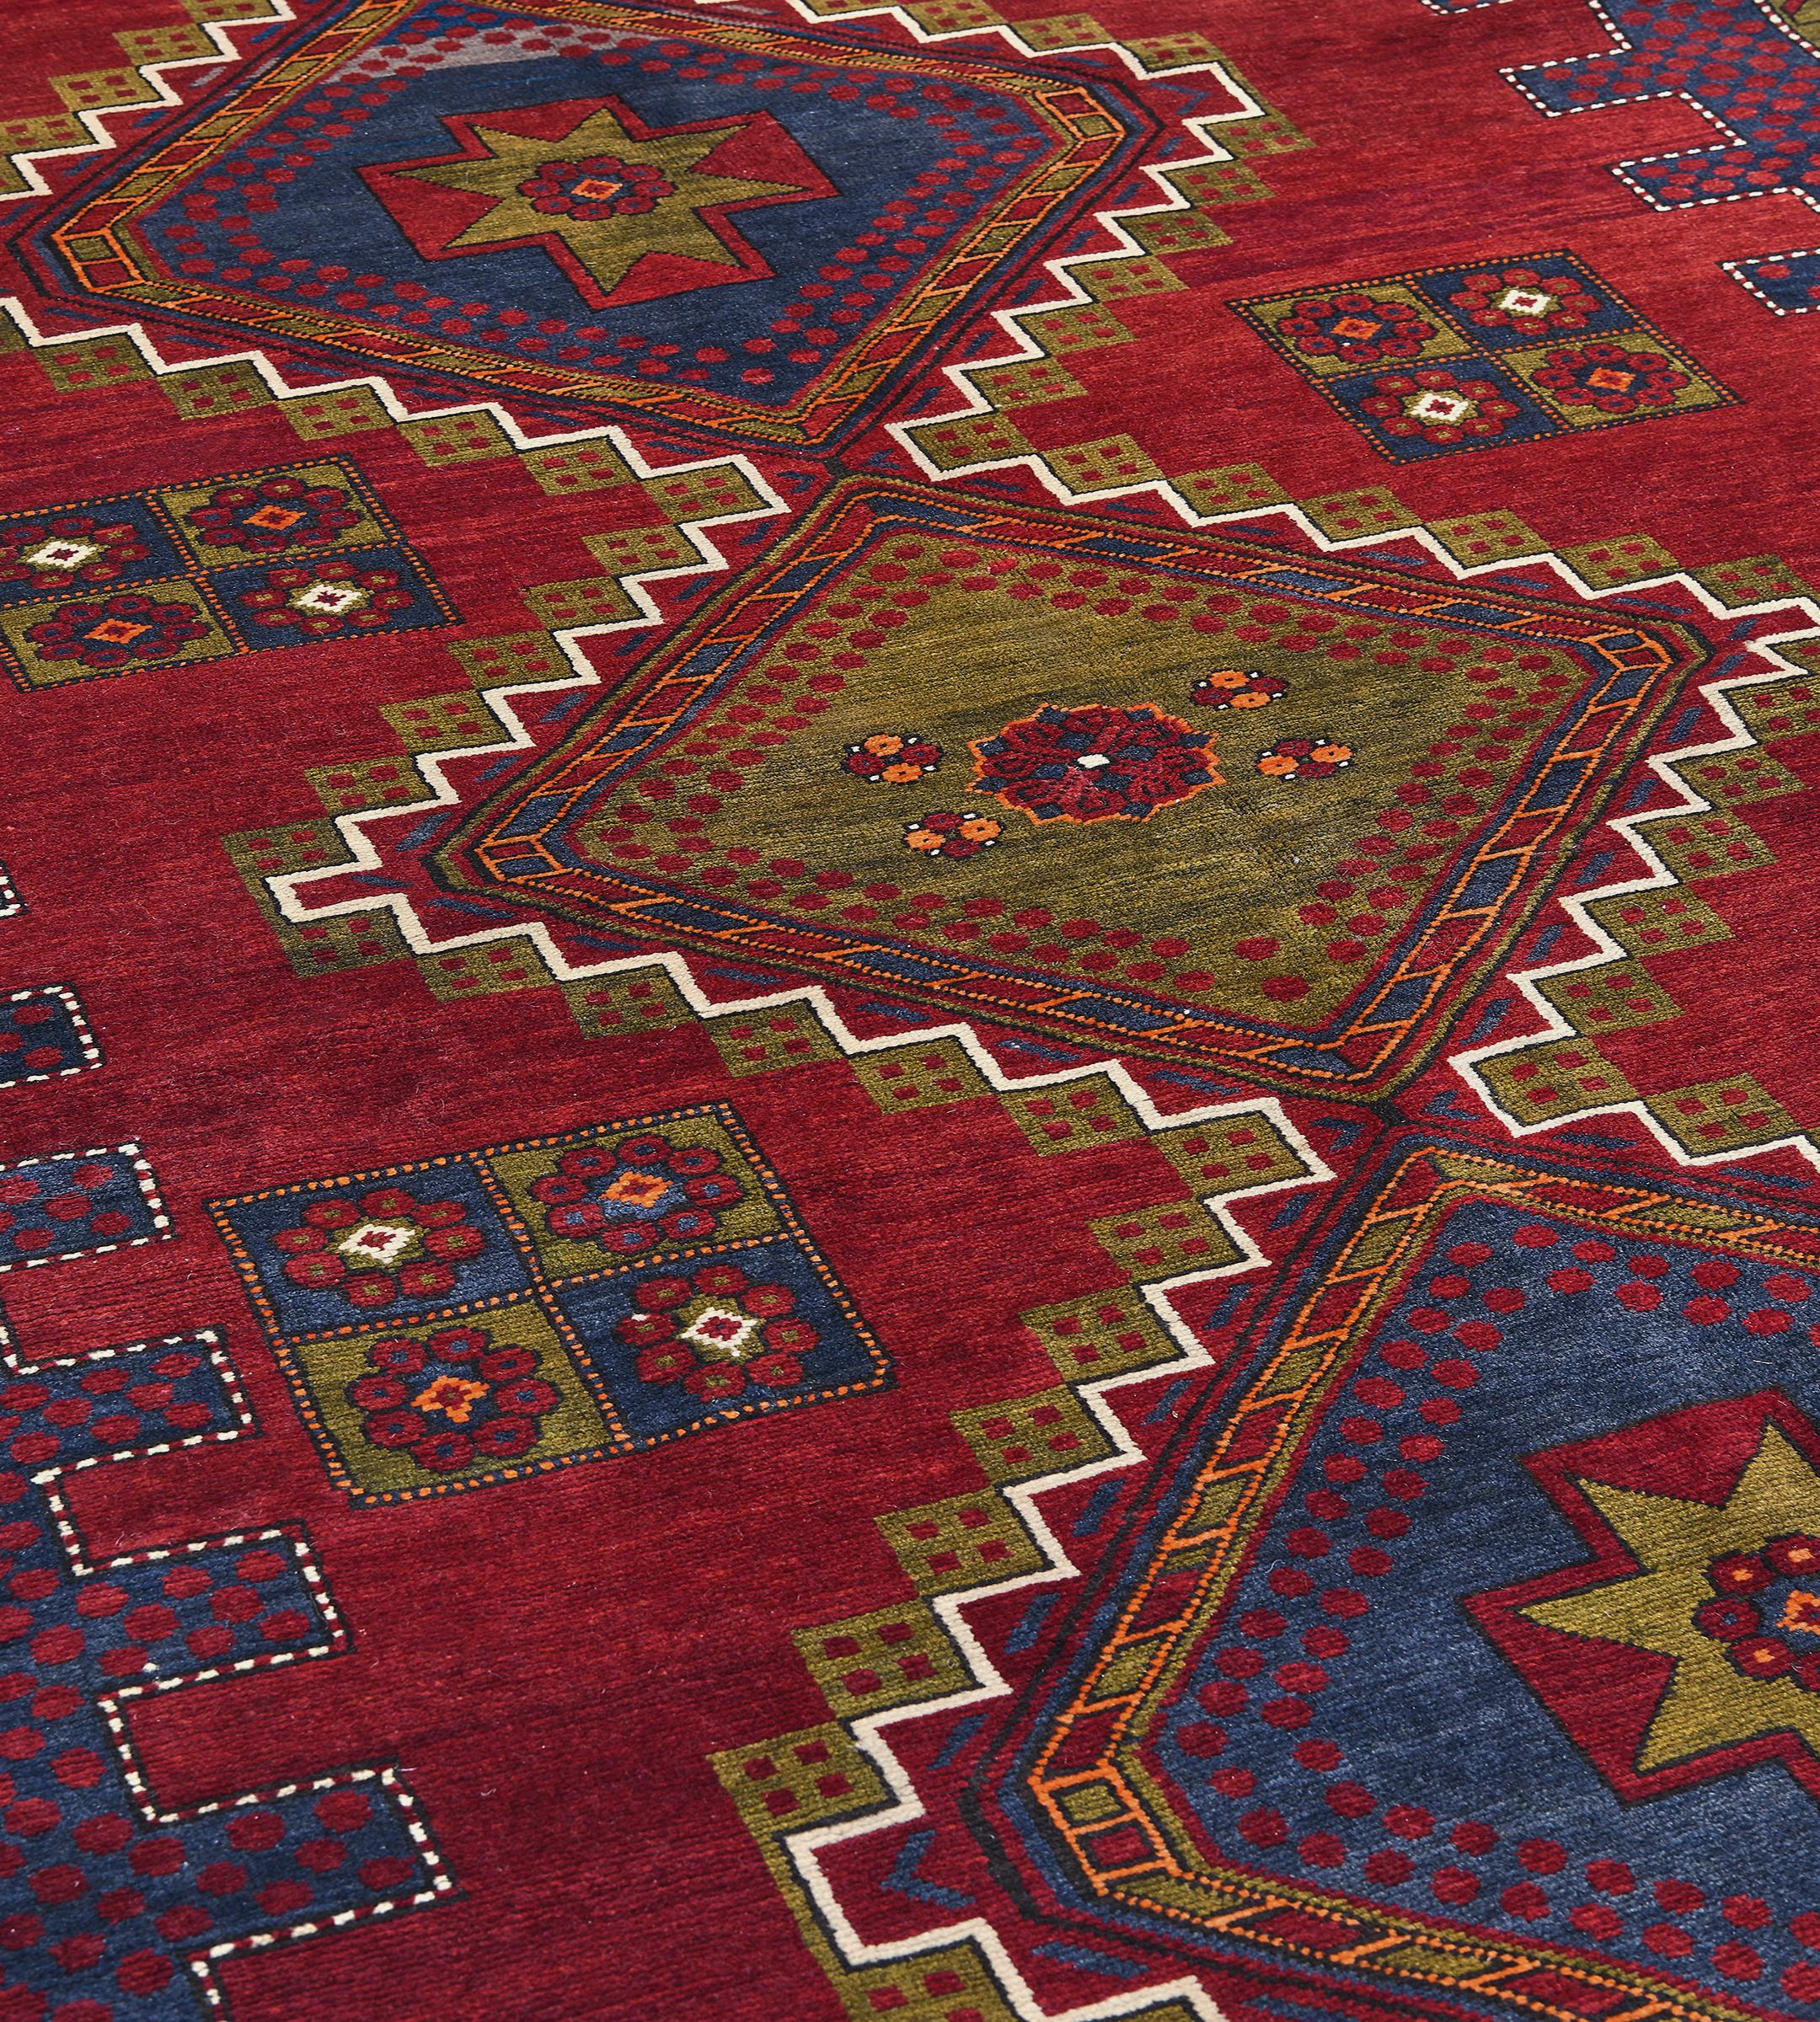 Ce tapis traditionnel caucasien Shirvan tissé à la main présente un attrayant champ rubis nuancé contrebalancé par un délicat motif de têtes de fleurs clairsemées, entourant des triples médaillons complémentaires à gradins indigo et chartreuse, dans